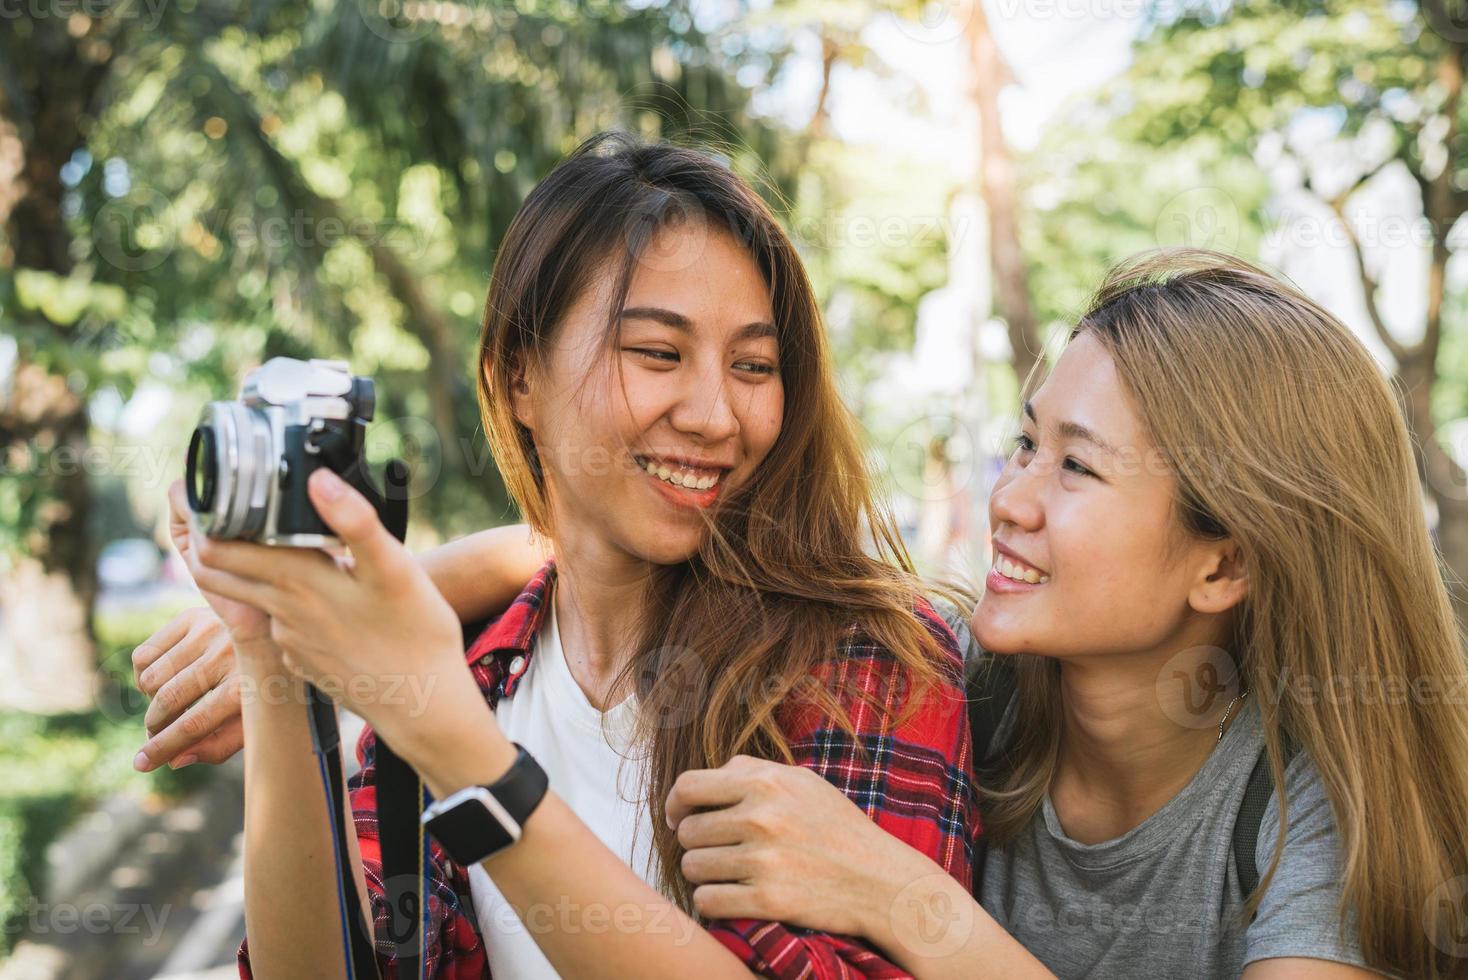 heureux beau voyageur asiatique ami femmes portent sac à dos. jeune amie joyeuse femmes asiatiques utilisant un appareil photo pour faire des photos pendant la visite de la ville, émotions joyeuses. mode de vie des femmes en plein air dans le concept de la ville.